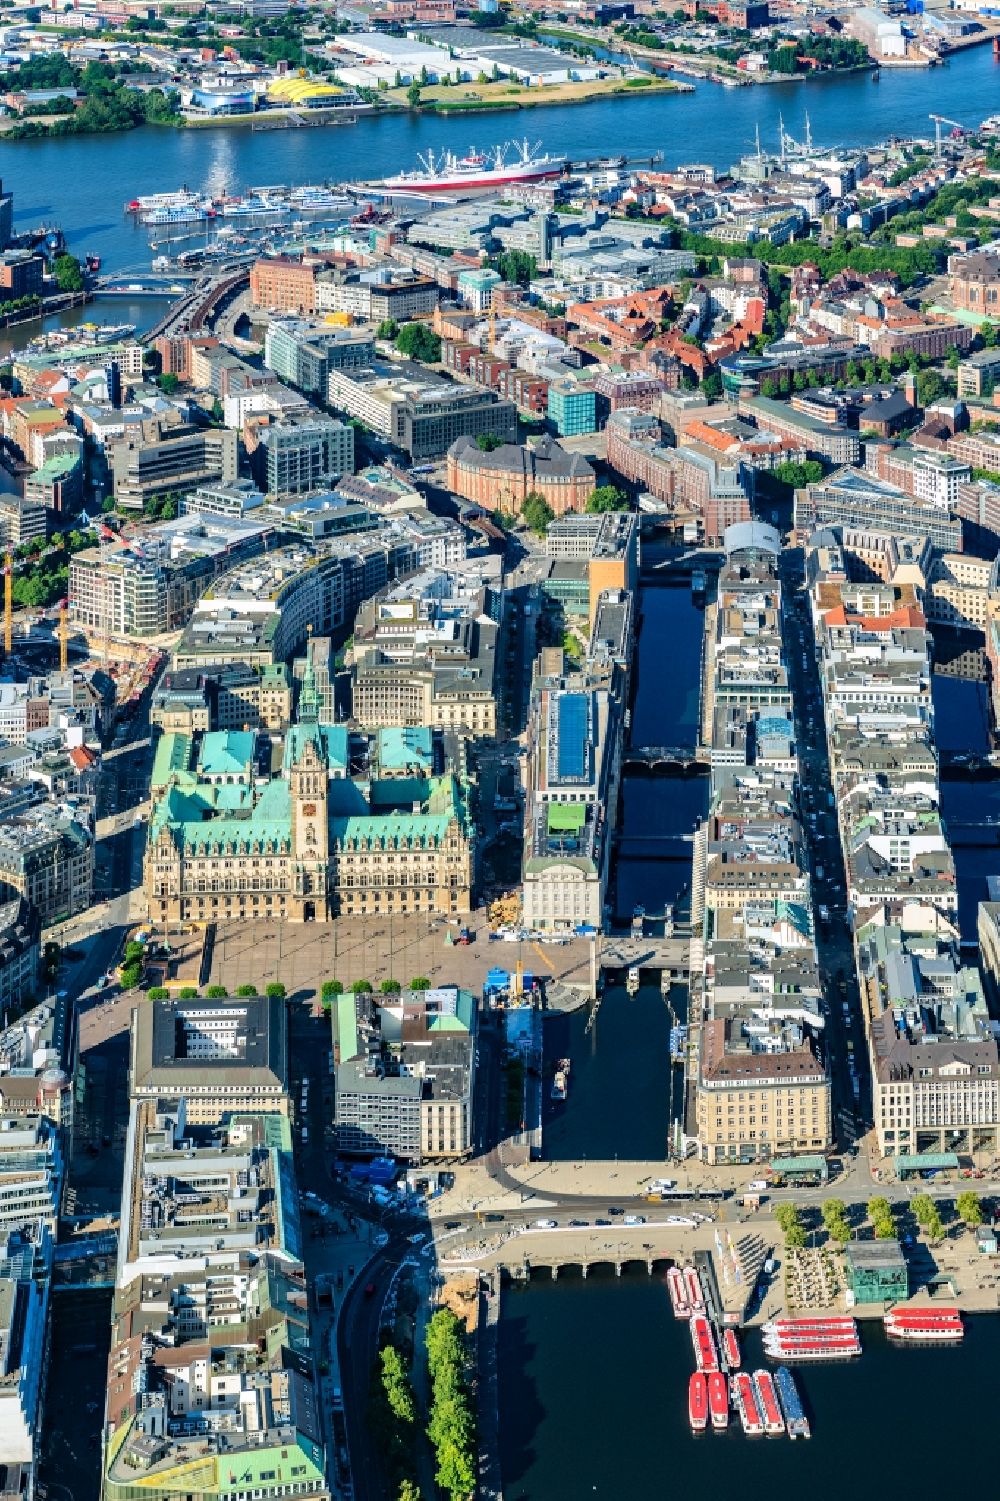 Luftbild Hamburg - Straßenführung der bekannten Flaniermeile und Einkaufsstraße Jungfernstieg in Hamburg, Deutschland